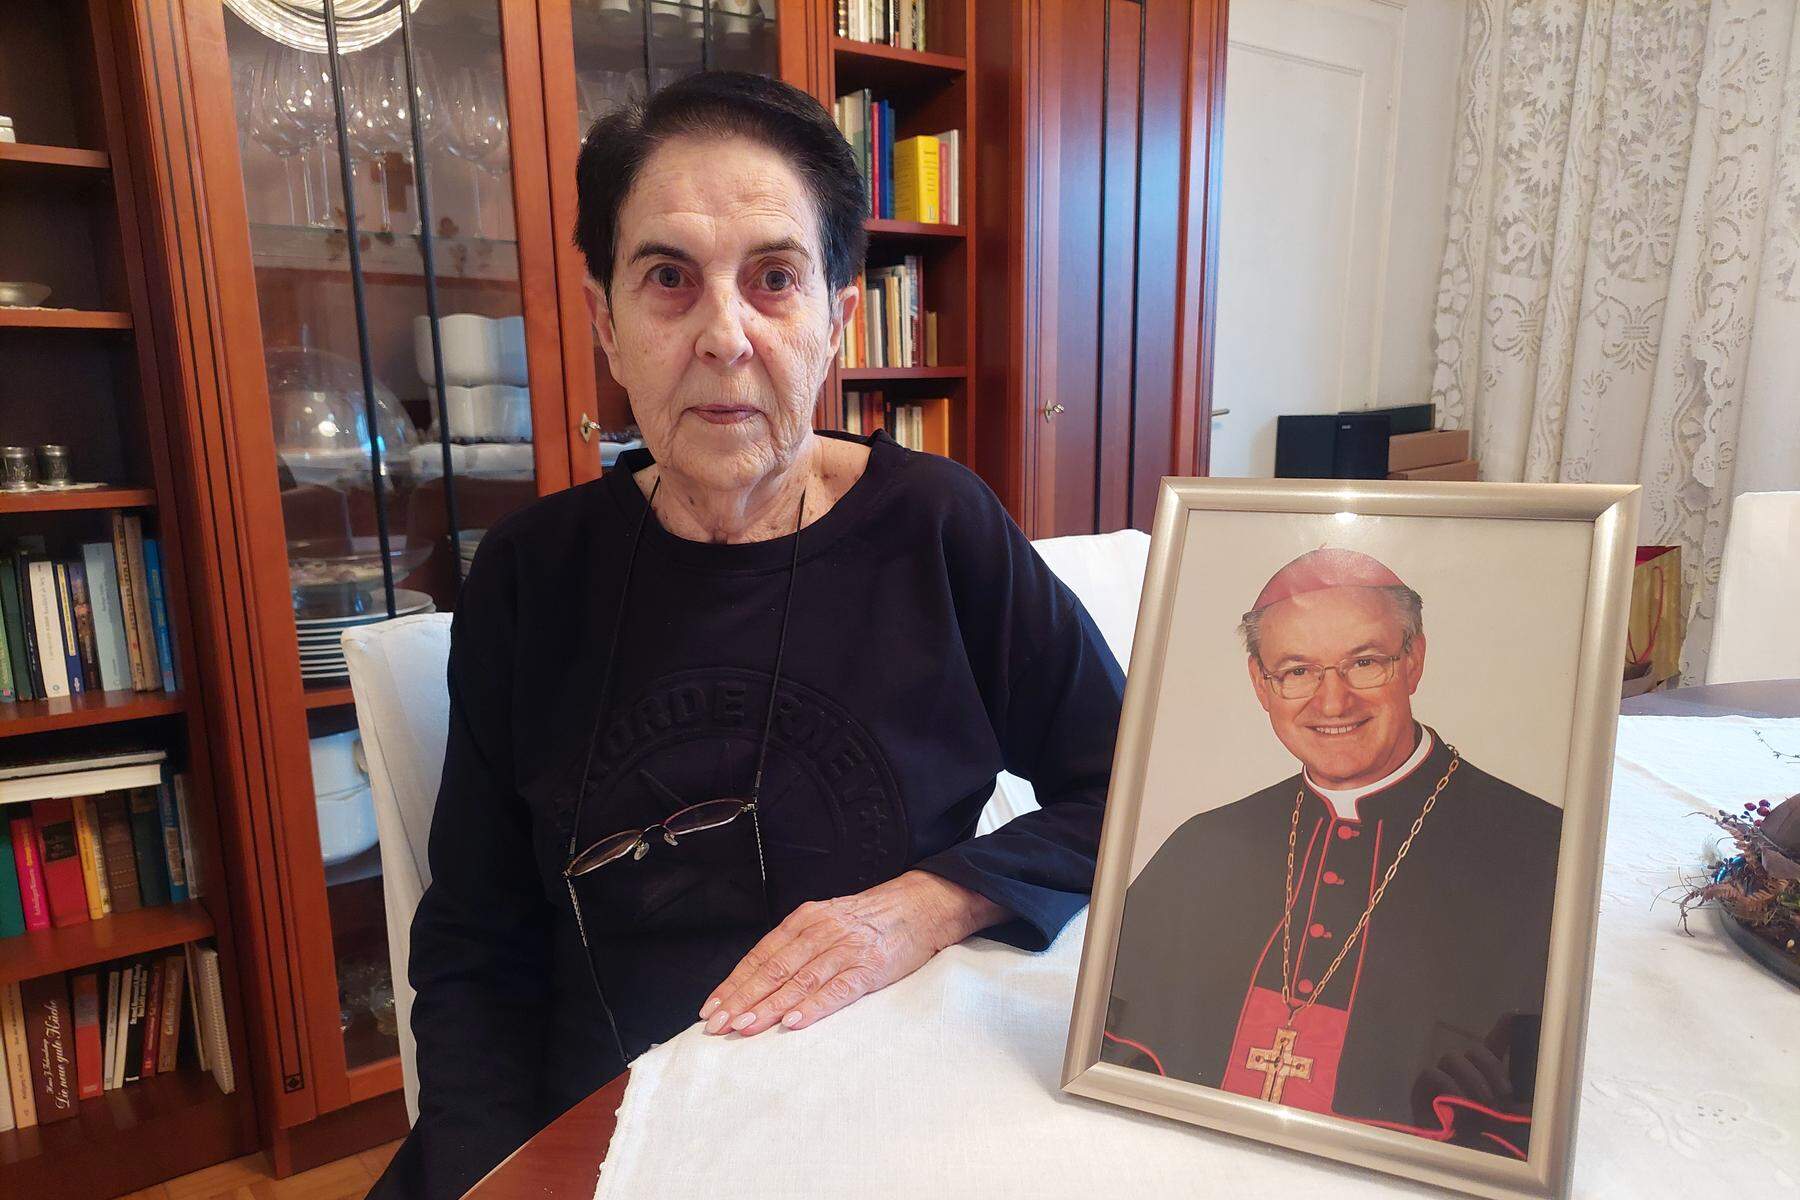 St. Stefan trauert um Alois Kothgasser: Marianne Papst: „In unserem Haus ist der Herr Bischof groß geworden“